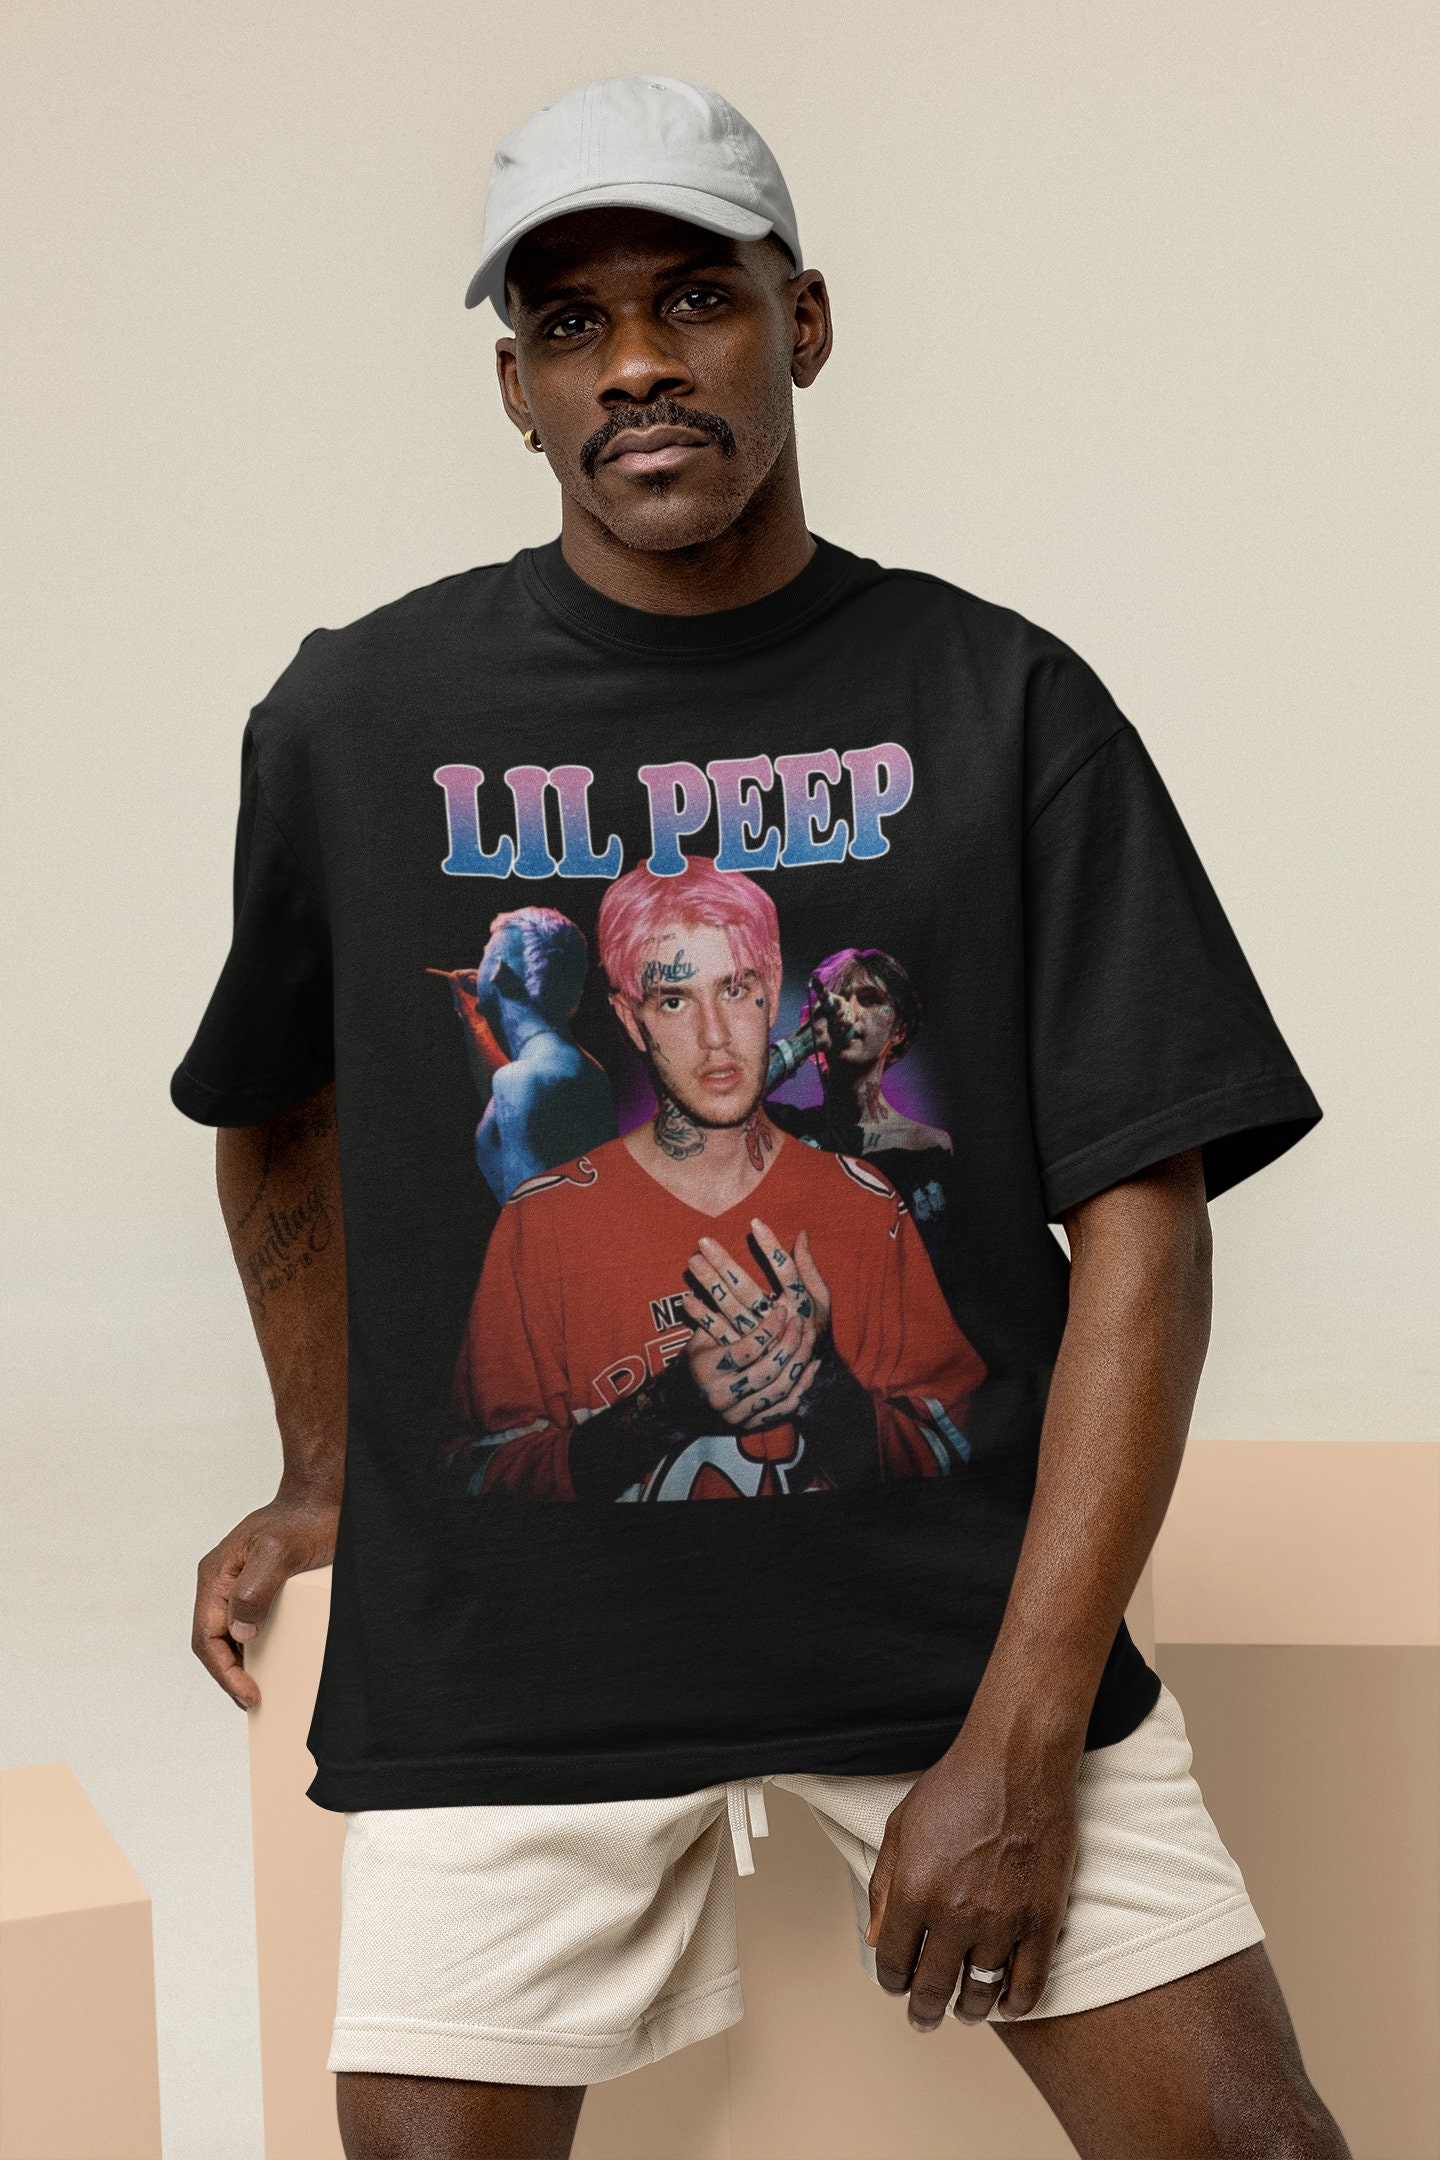 Discover Lil Peep T-shirt, Rapper's T-shirt, Rap Hip Hop Tee Gift for men women t-shirt